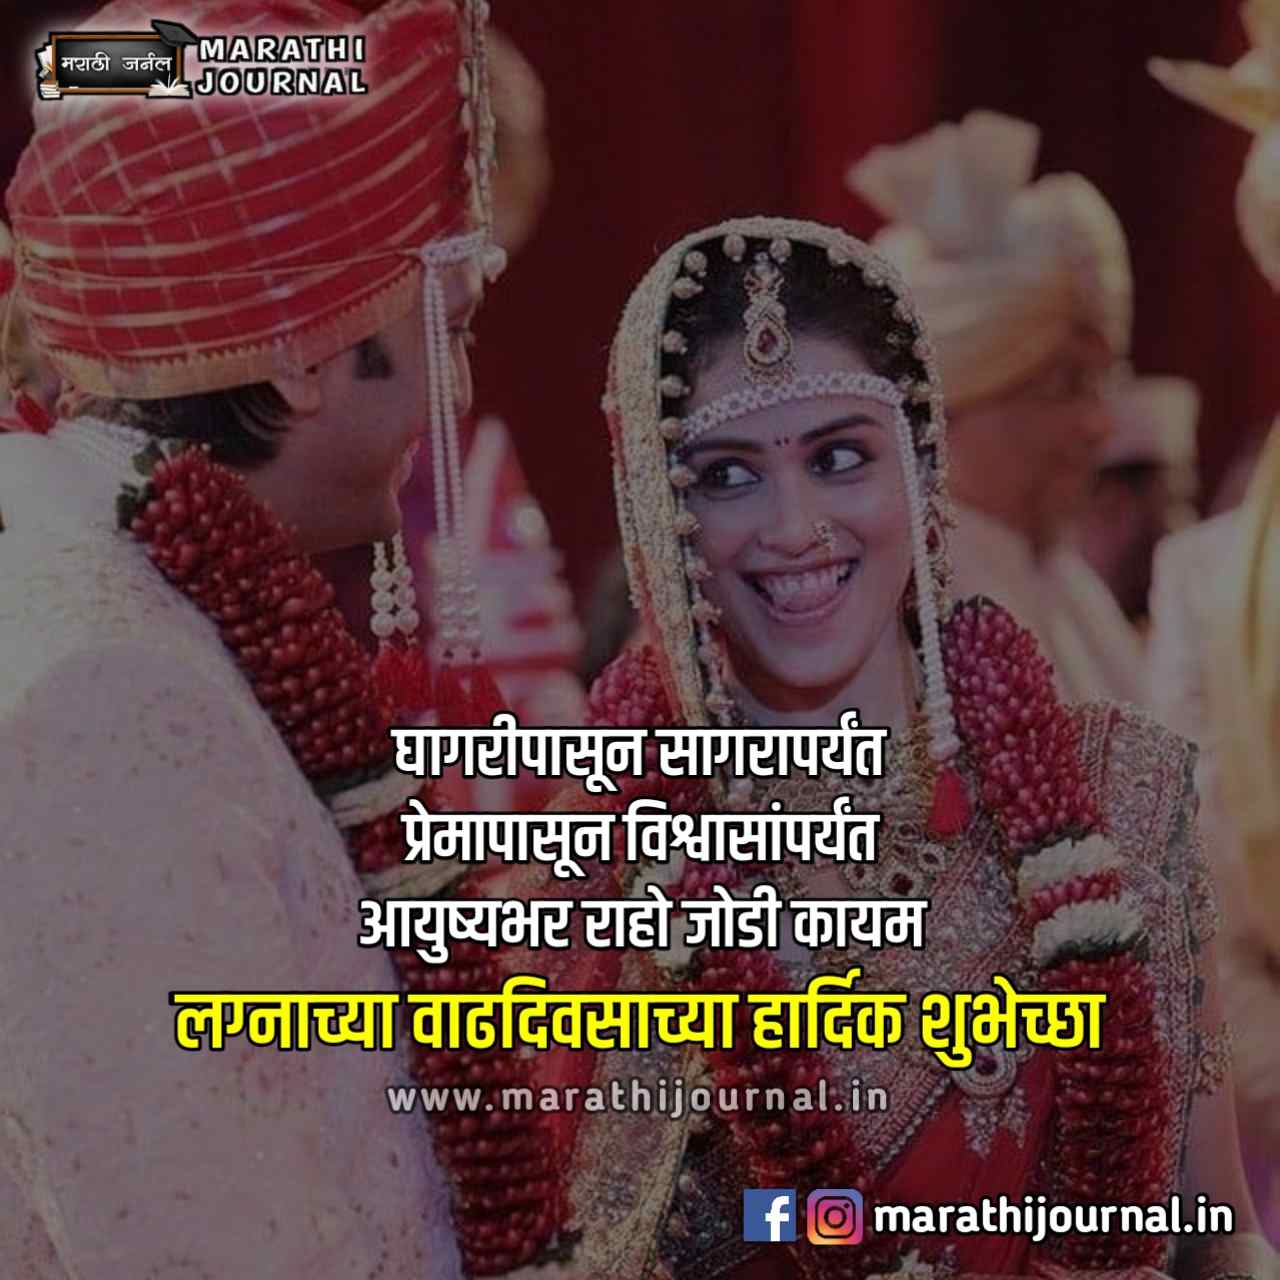 लग्नाच्या वाढदिवसाच्या हार्दिक शुभेच्छा | Happy Marriage Anniversary Wishes in Marathi